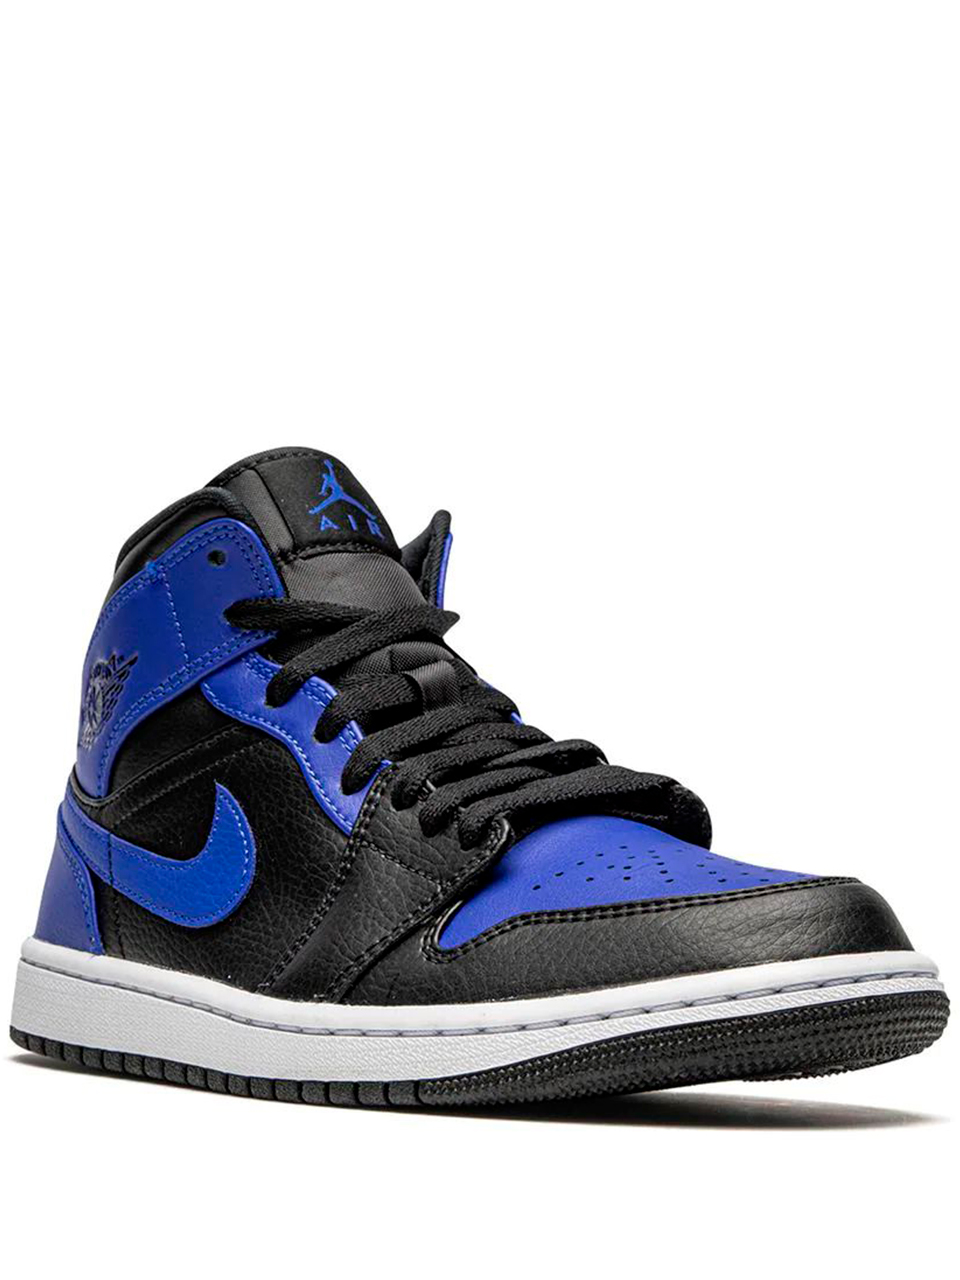 Imagem de: Tênis Nike Air Jordan 1 Mid Azul